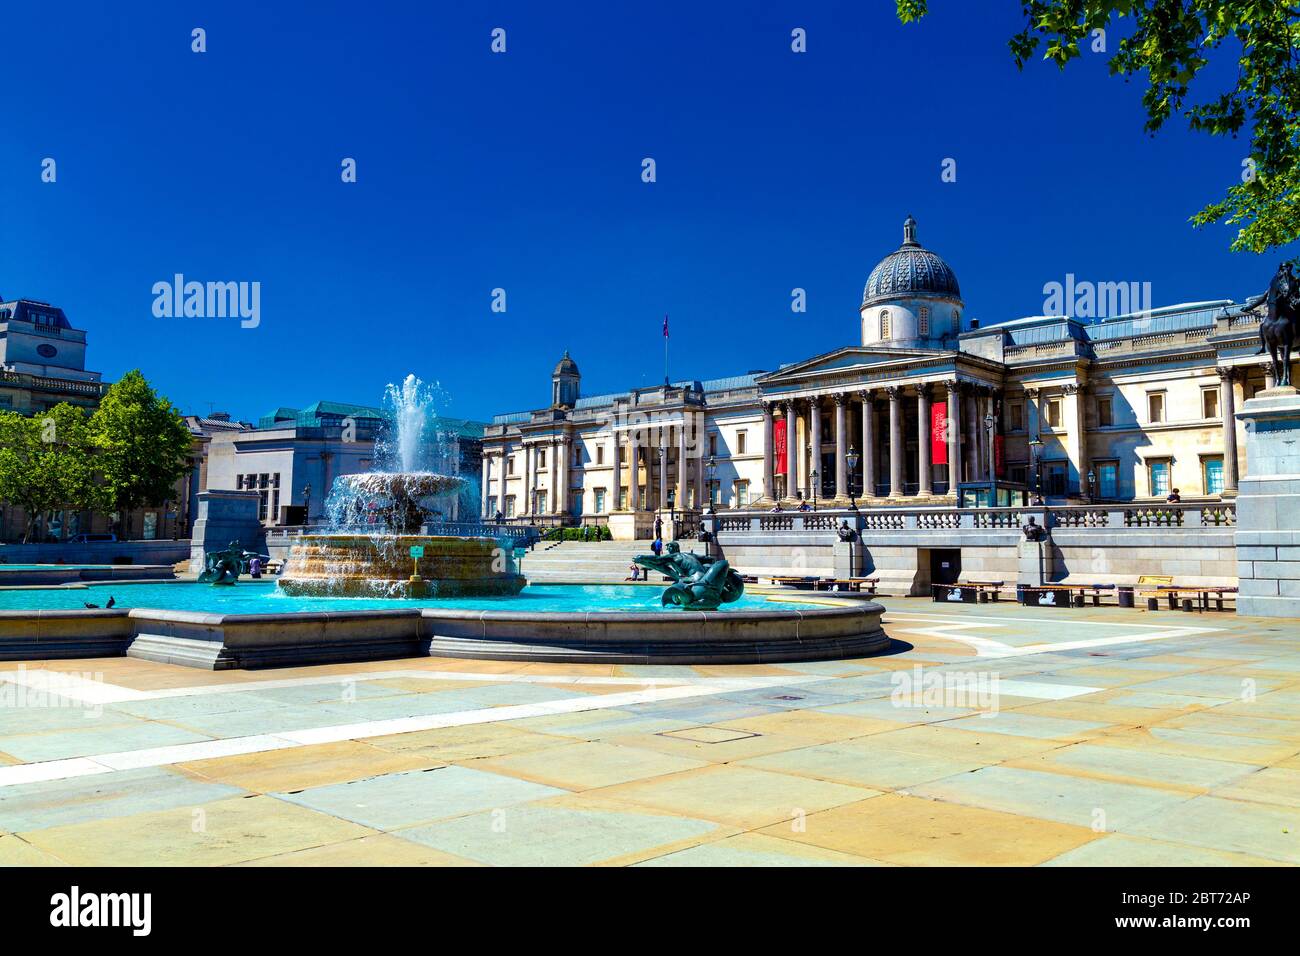 21. Mai 2020, London, UK - Trafalgar Square und die National Gallery während der Sperrung des Coronavirus-Ausbruchs völlig leer und verlassen Stockfoto